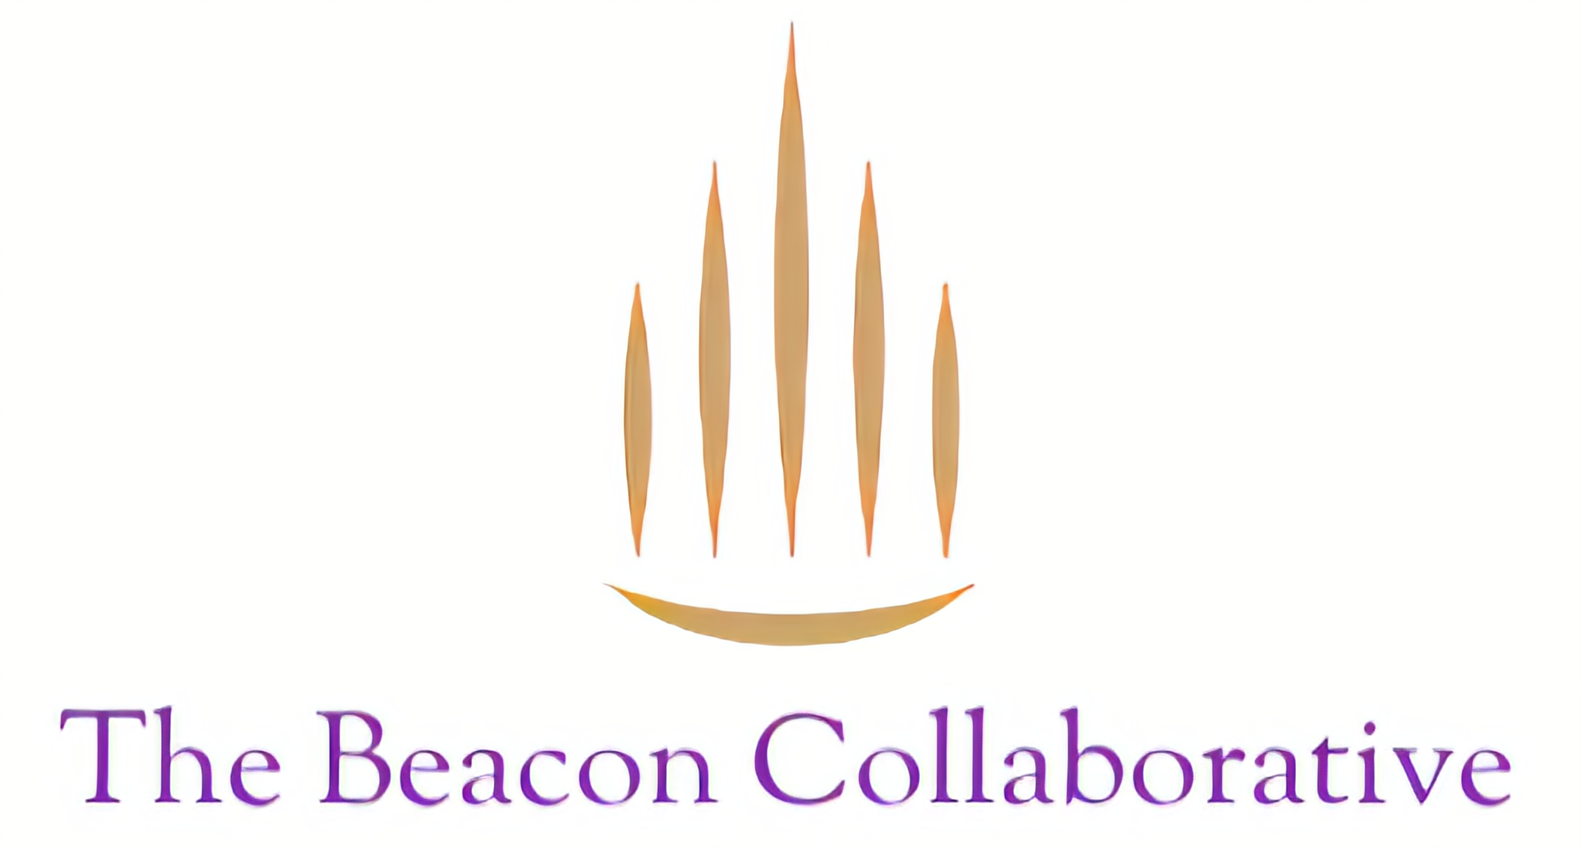 The Beacon Collaborative logo